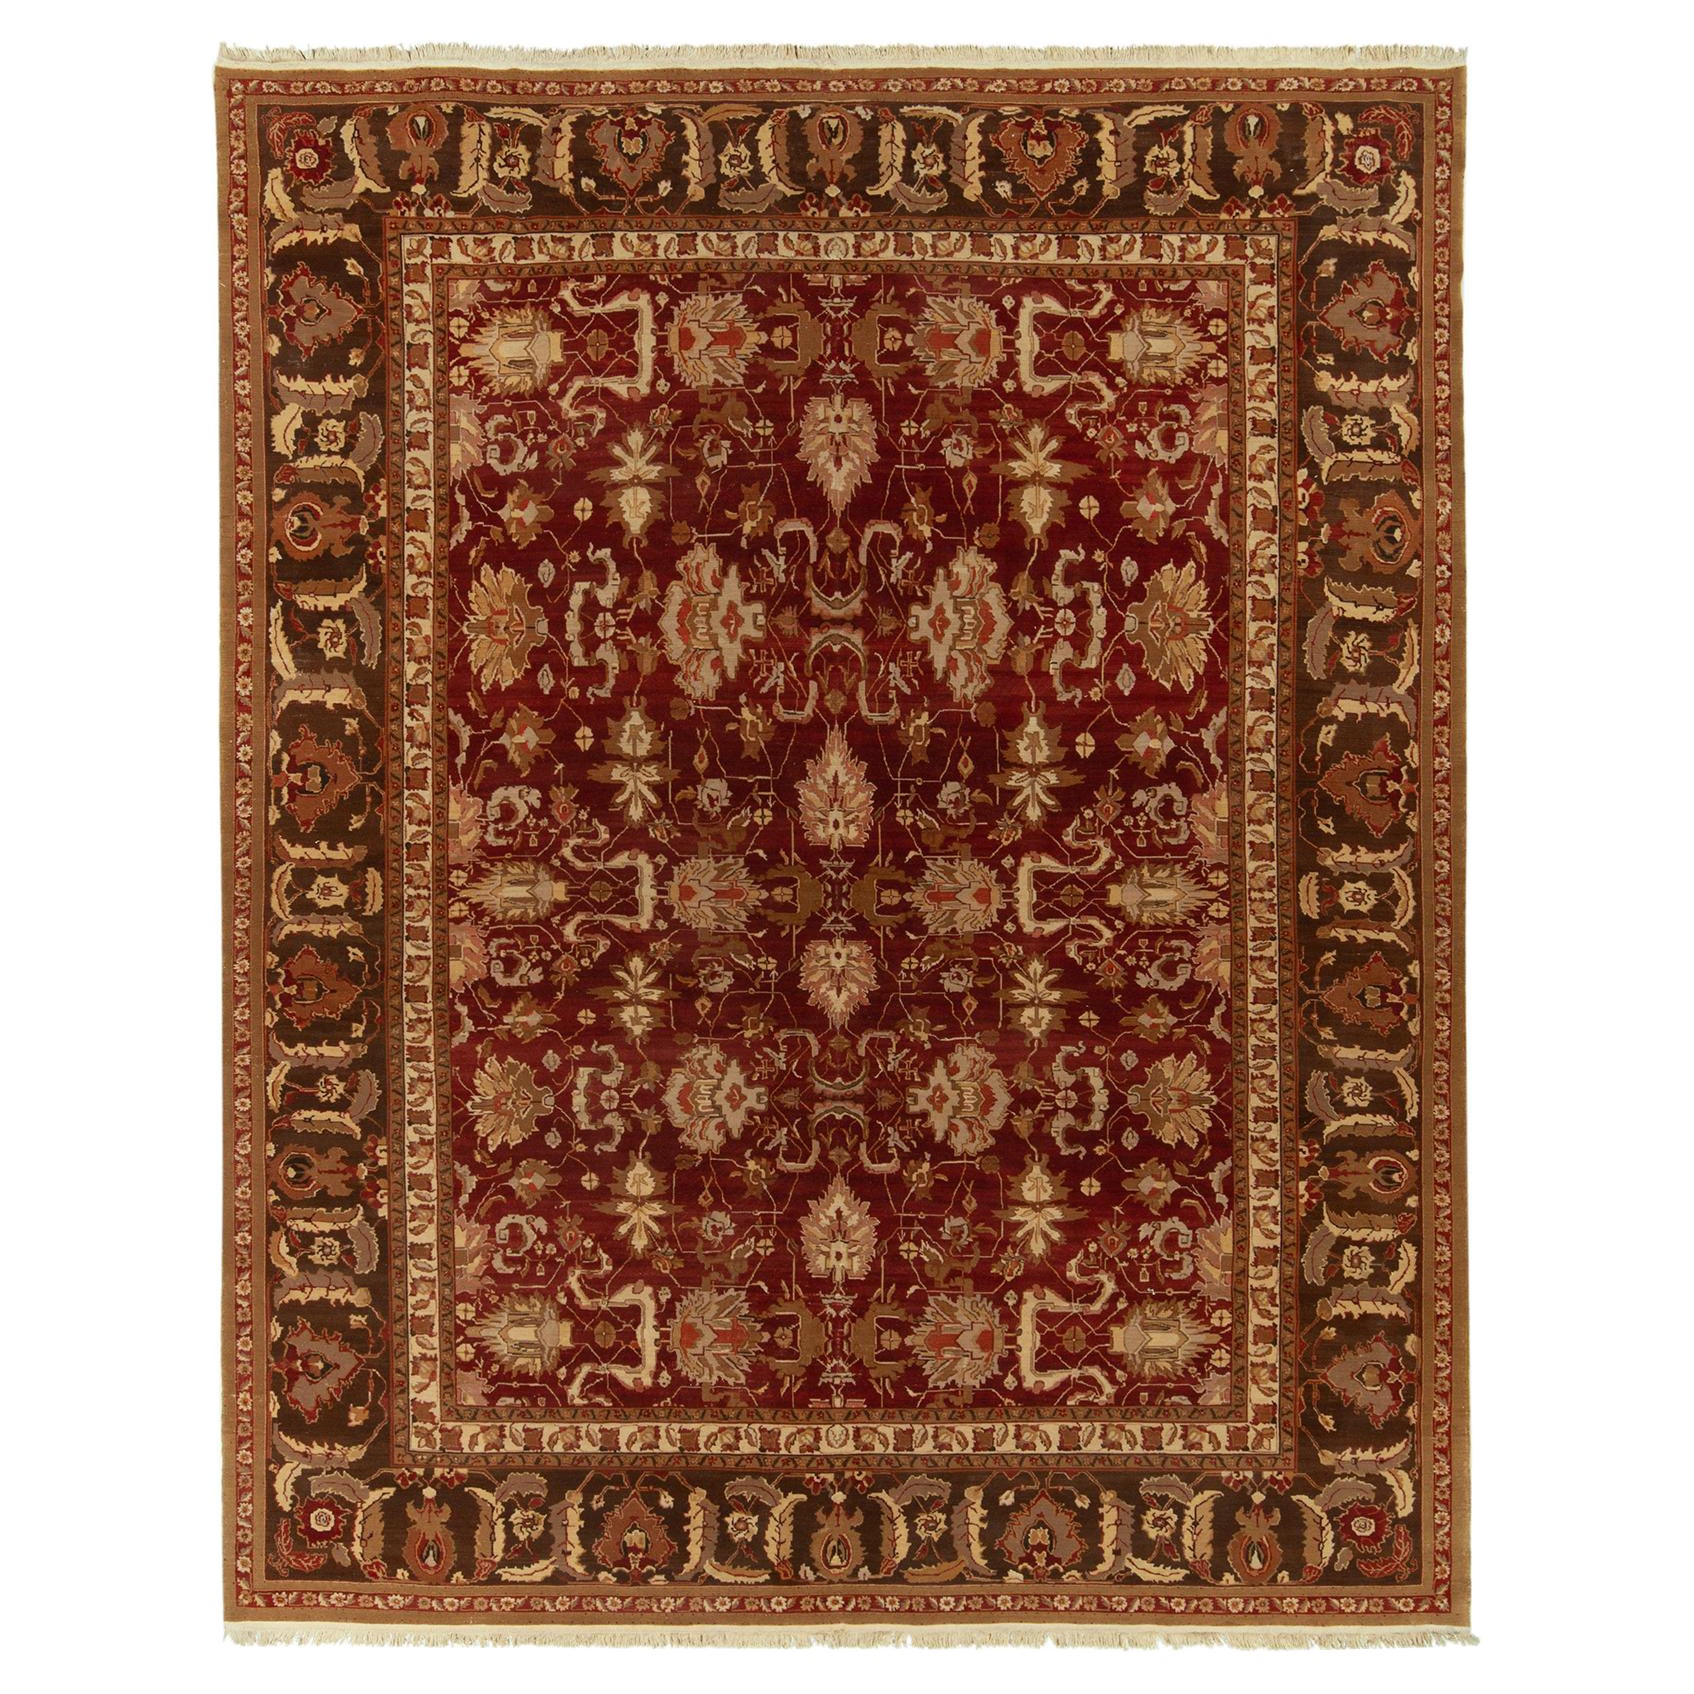 Traditioneller Agra-Teppich von Rug & Kilim in Rot, Beige und Brown mit Blumenmuster